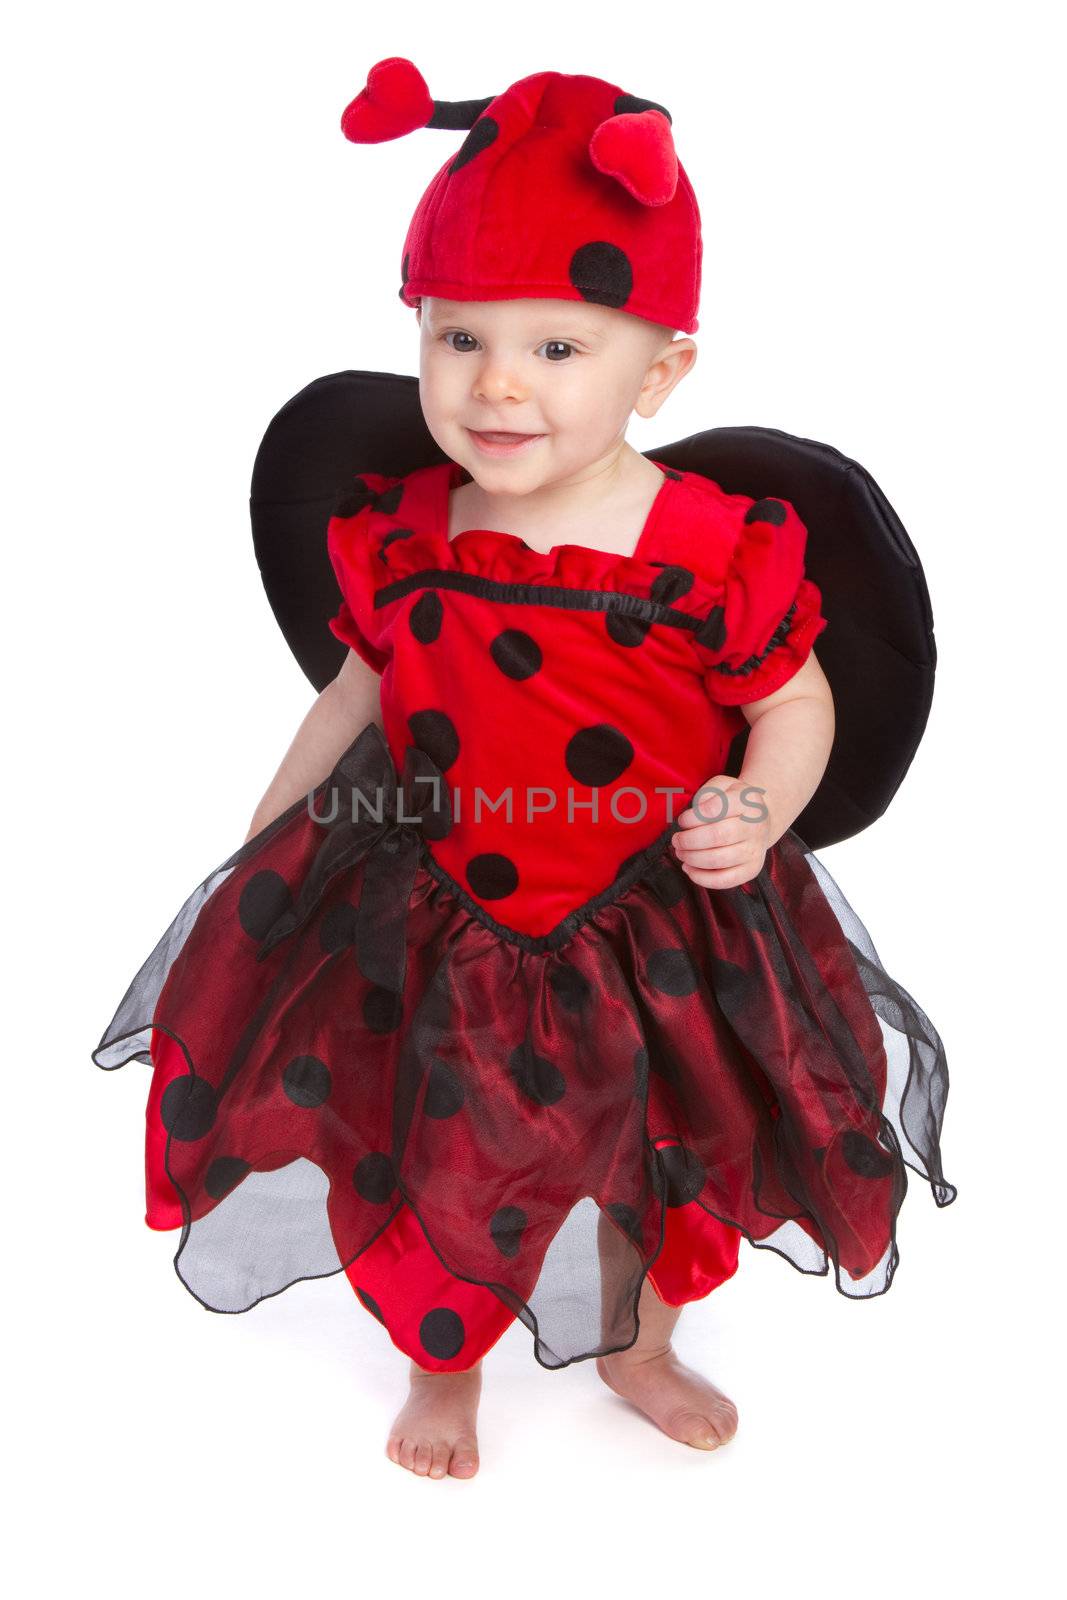 Baby girl wearing halloween costume